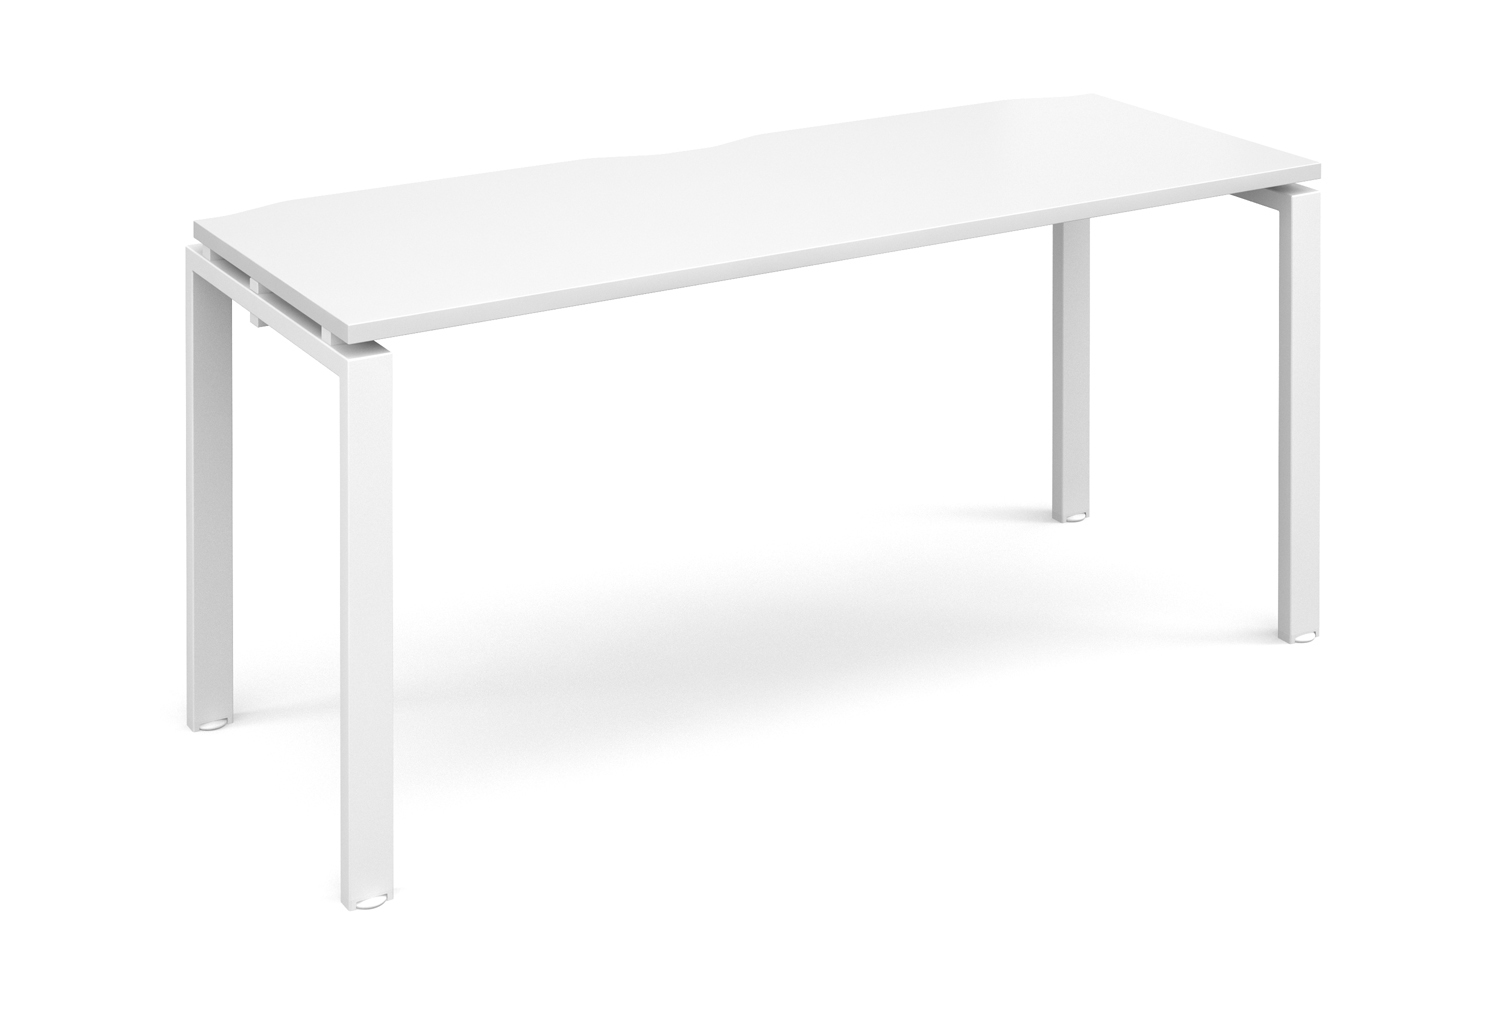 Prime Single Bench Narrow Office Desk (White Legs), 160w60dx73h (cm), White, Fully Installed